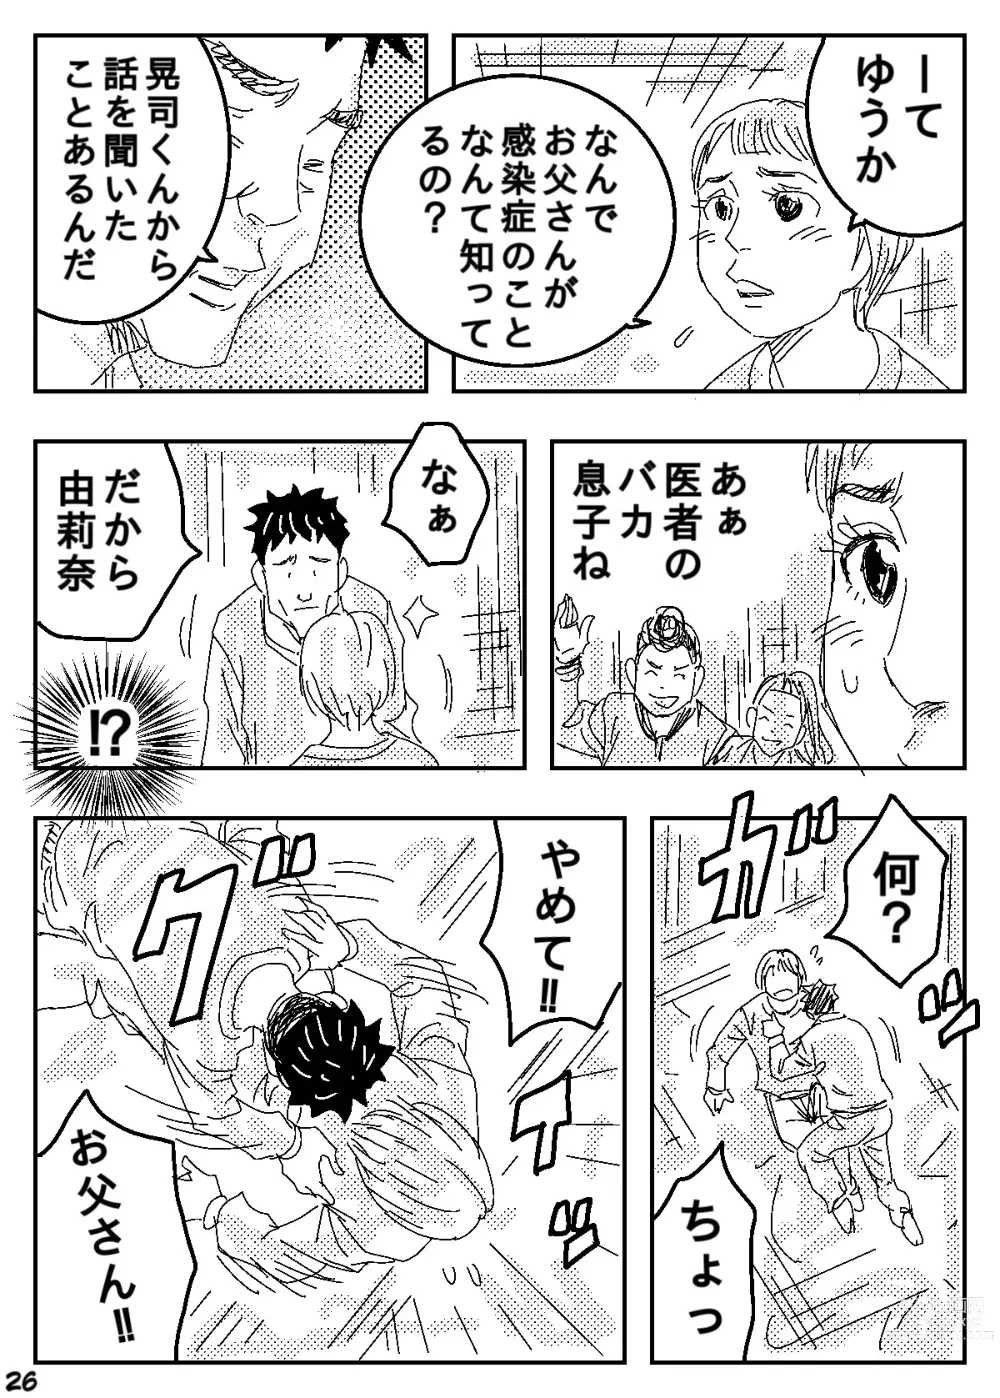 Page 26 of doujinshi Gesu no Kiwami Kazoku